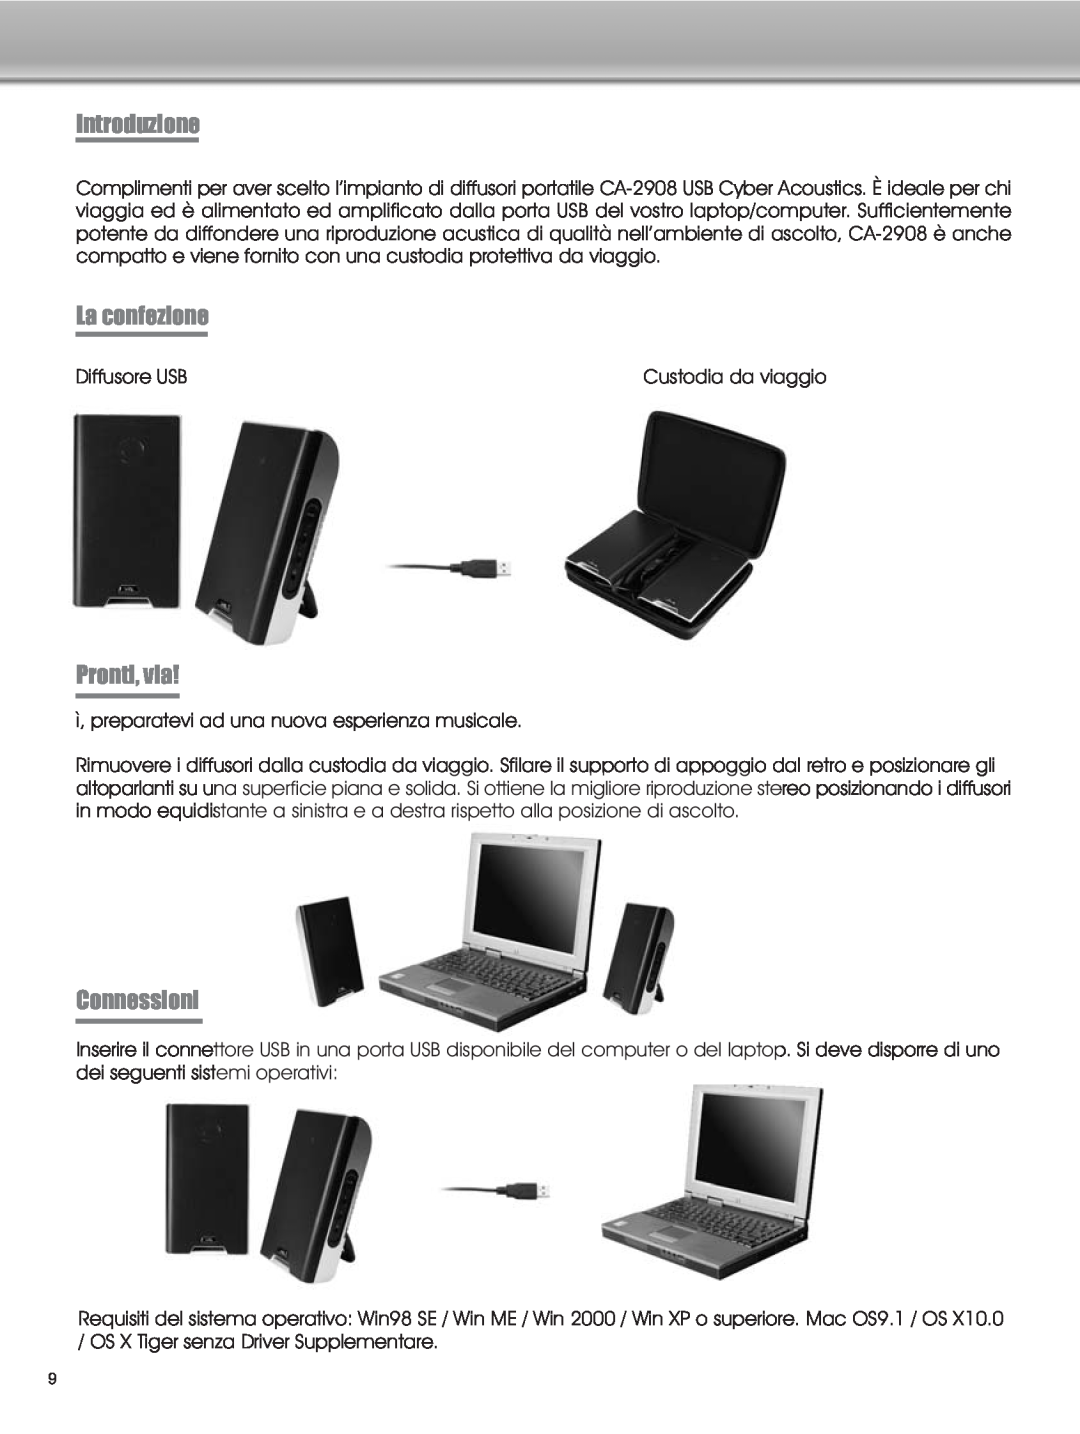 Cyber Acoustics CA-2908 manual Introduzione, La confezione, Pronti, via, Connessioni 